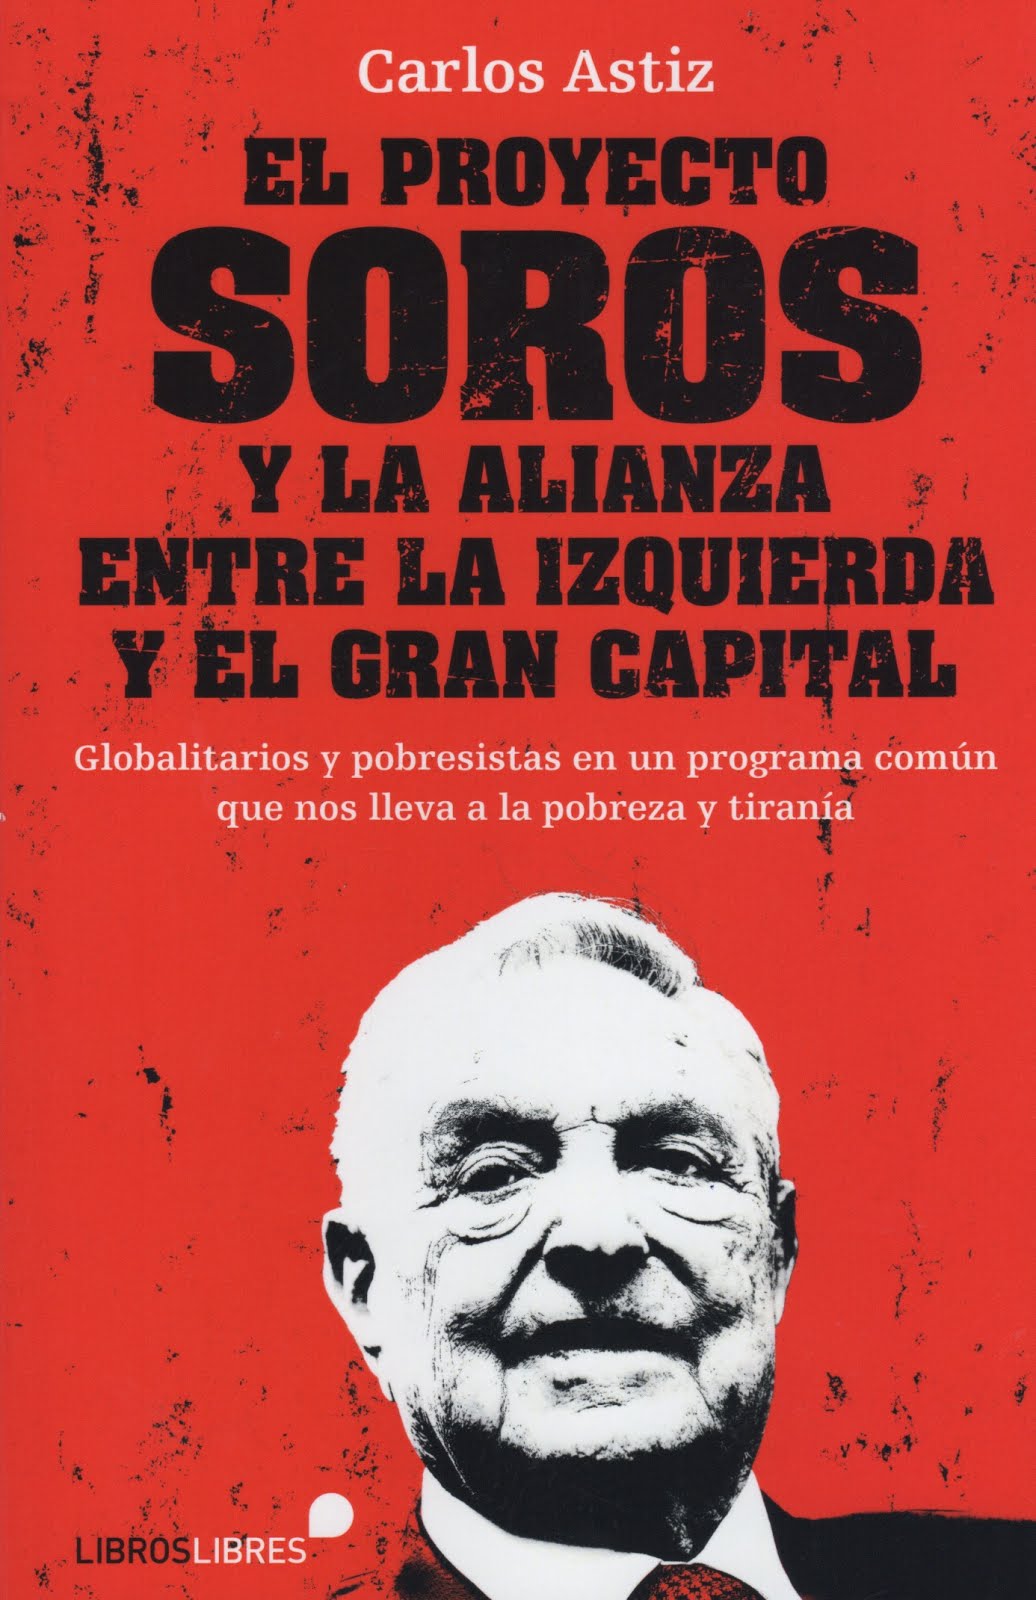 Carlos Astiz (El proyecto Soros) Y la alianza entre la izquierda y el gran capital. Globalitarios y